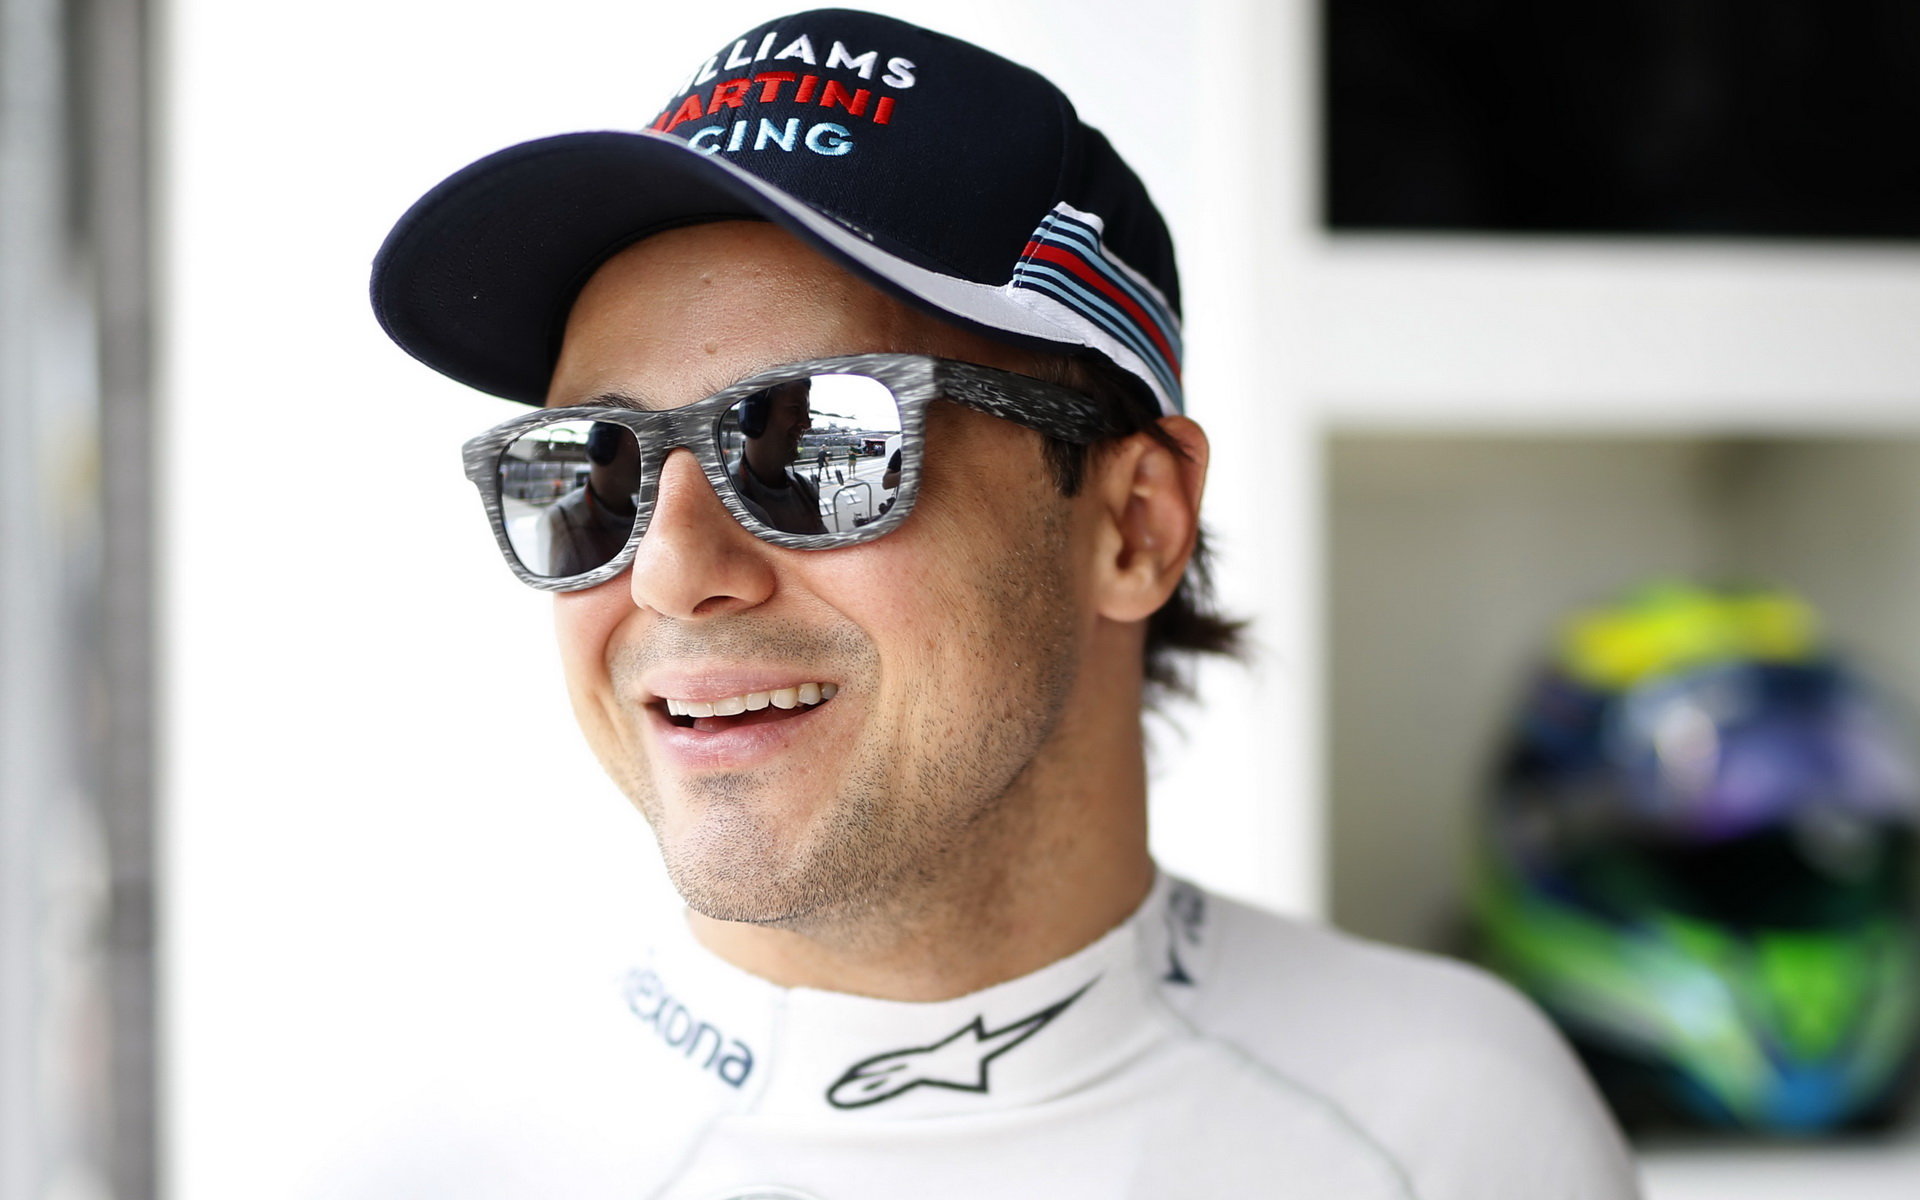 Felipe Massa vzpomíná na okamžik hrůzy před sedmi lety